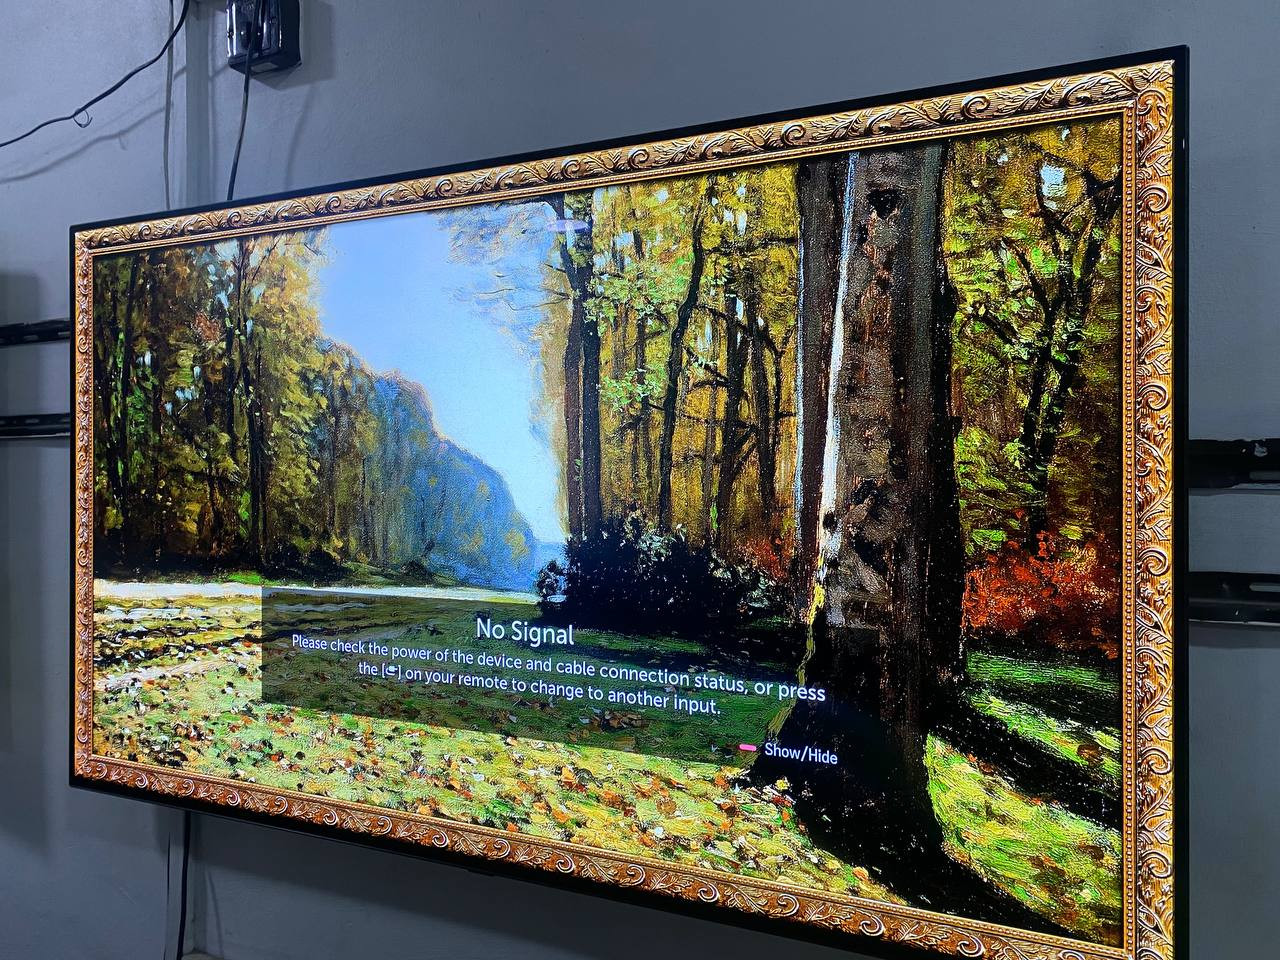 LG Smart 55" OLED 4K HDR Frameless TV 2019/20